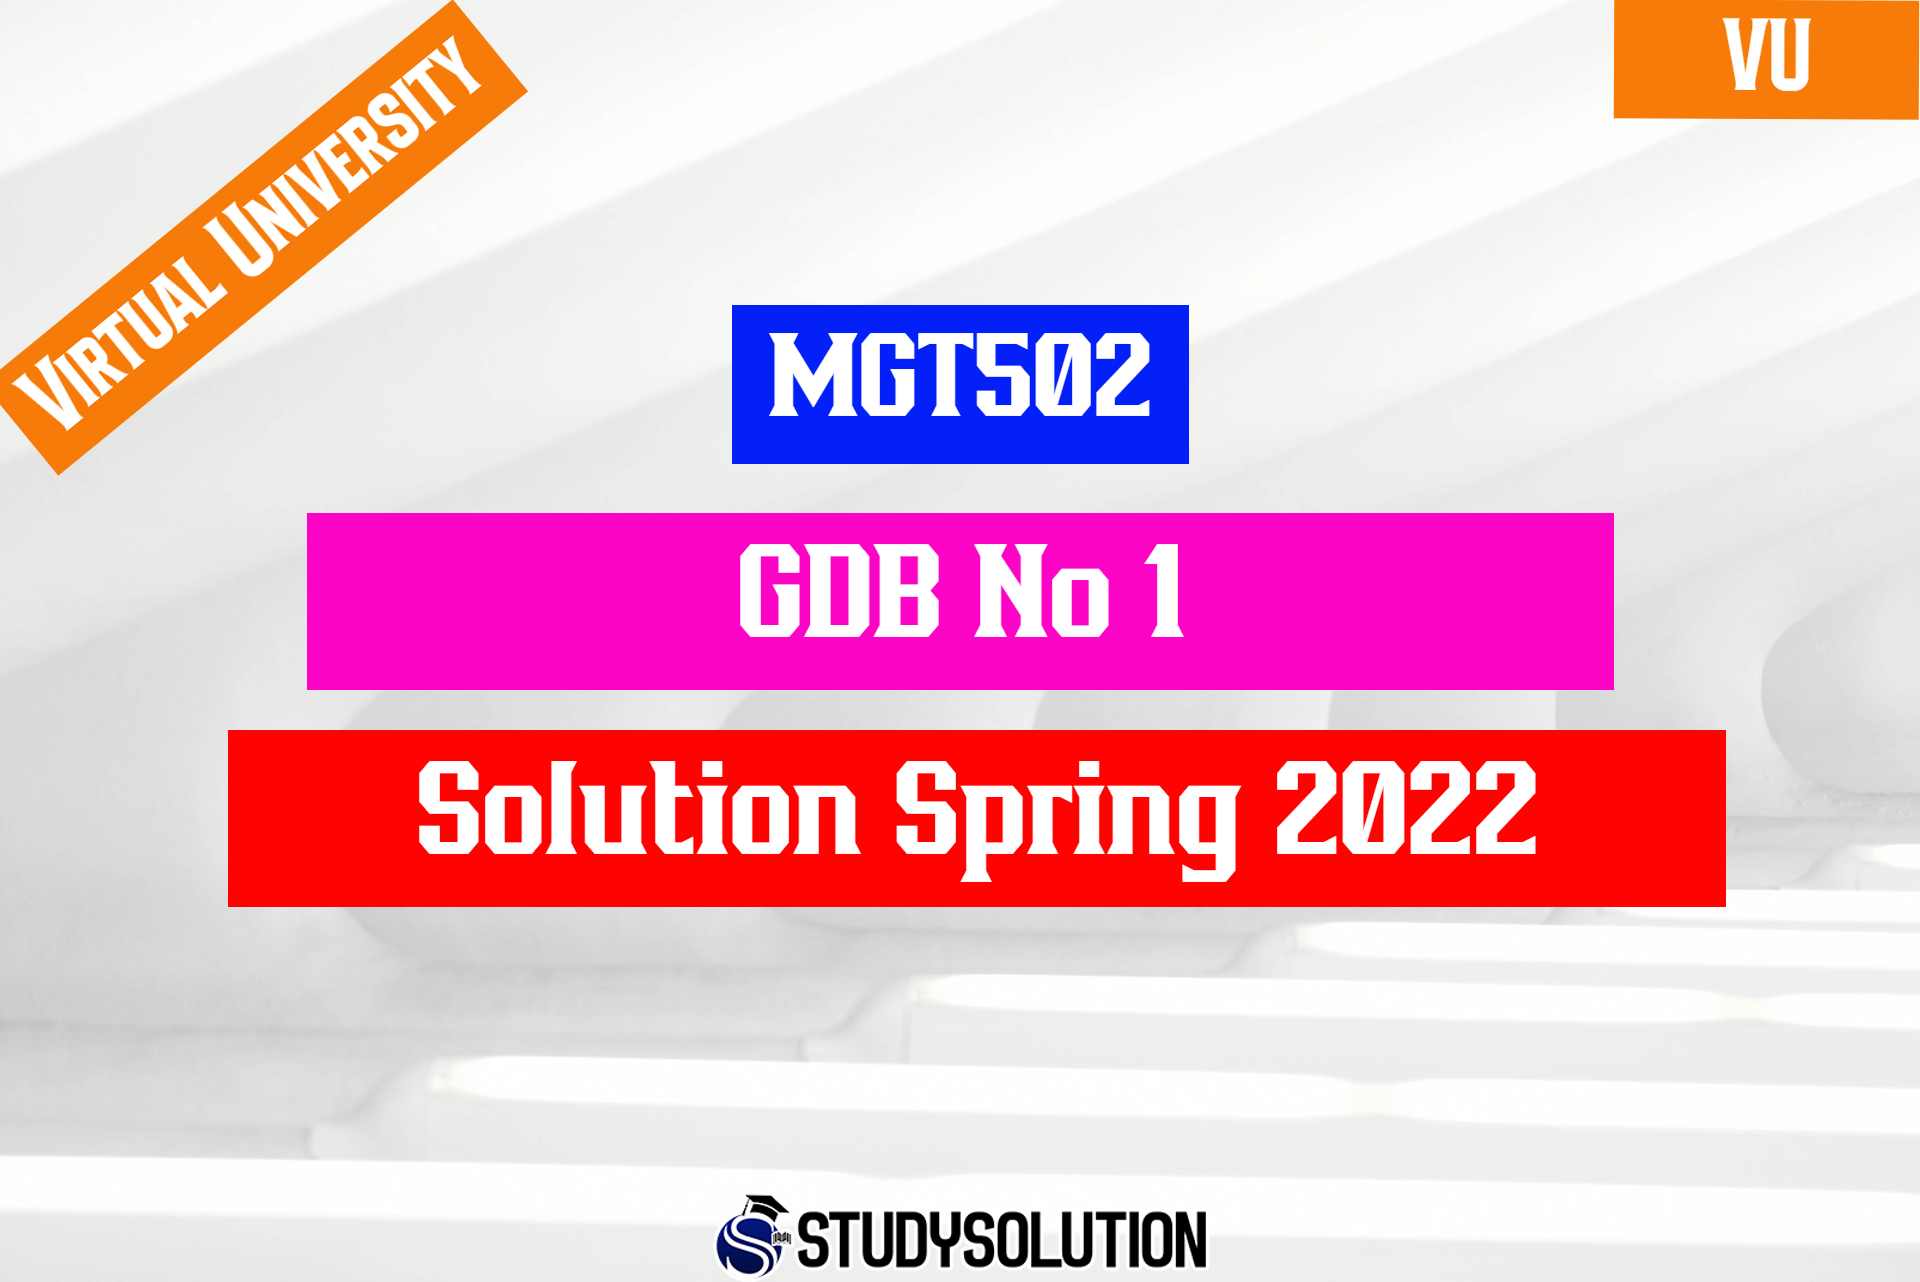 MGT502 GDB No 1 Solution Spring 2022